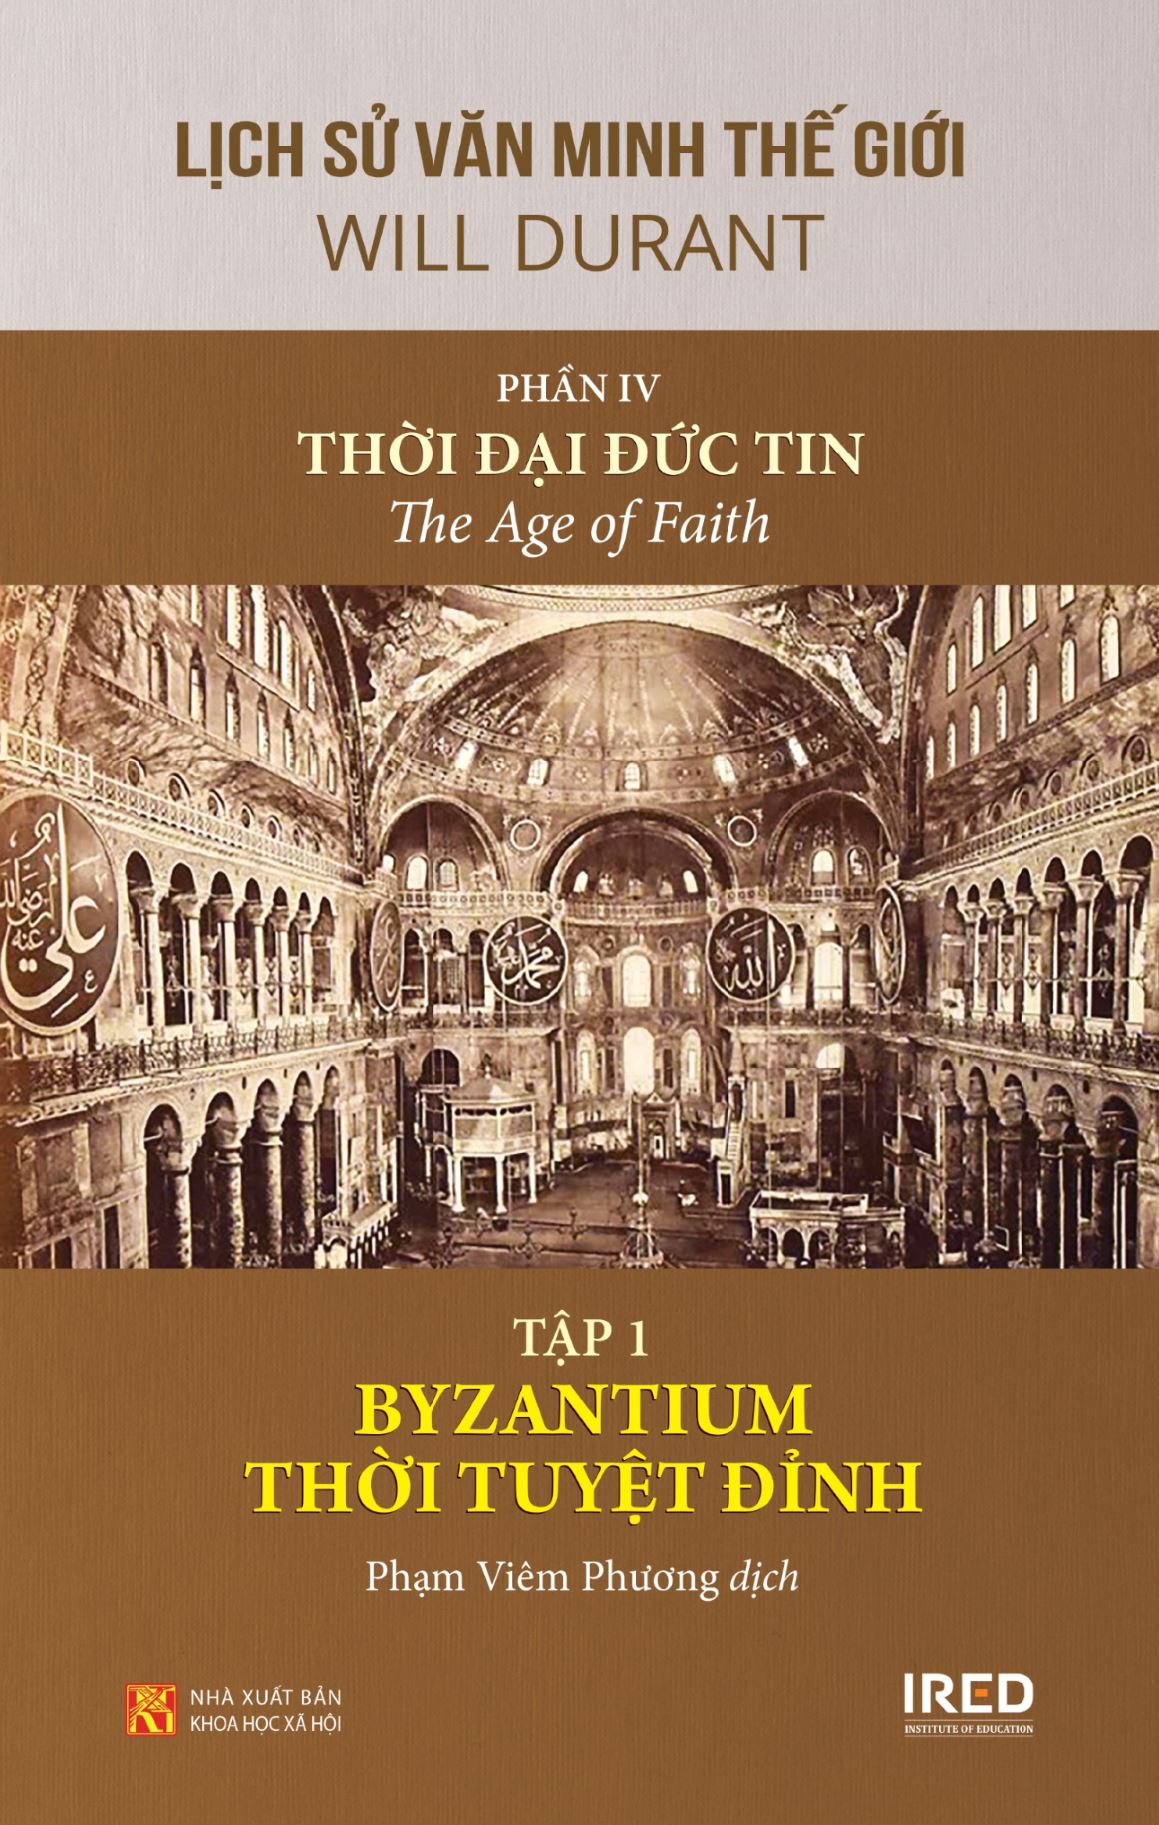 Sách IRED Books - Lịch sử văn minh thế giới phần 4: Thời đại đức tin - The Age of Faith (trọn bộ 5 tập) - Will Durant